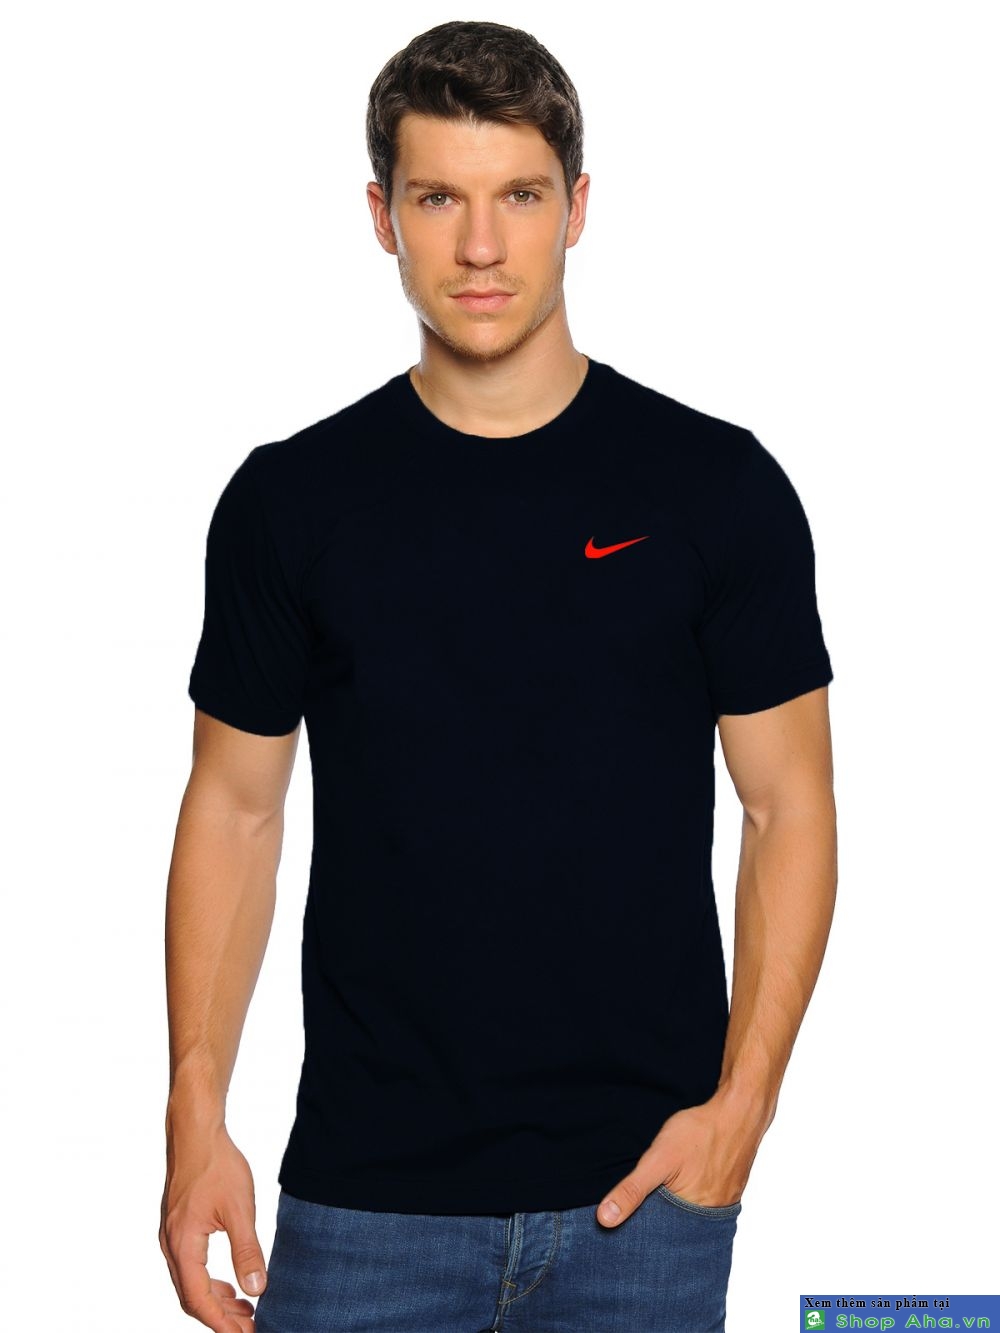 Áo thun Nike cổ tròn đen móc đỏ DAA005